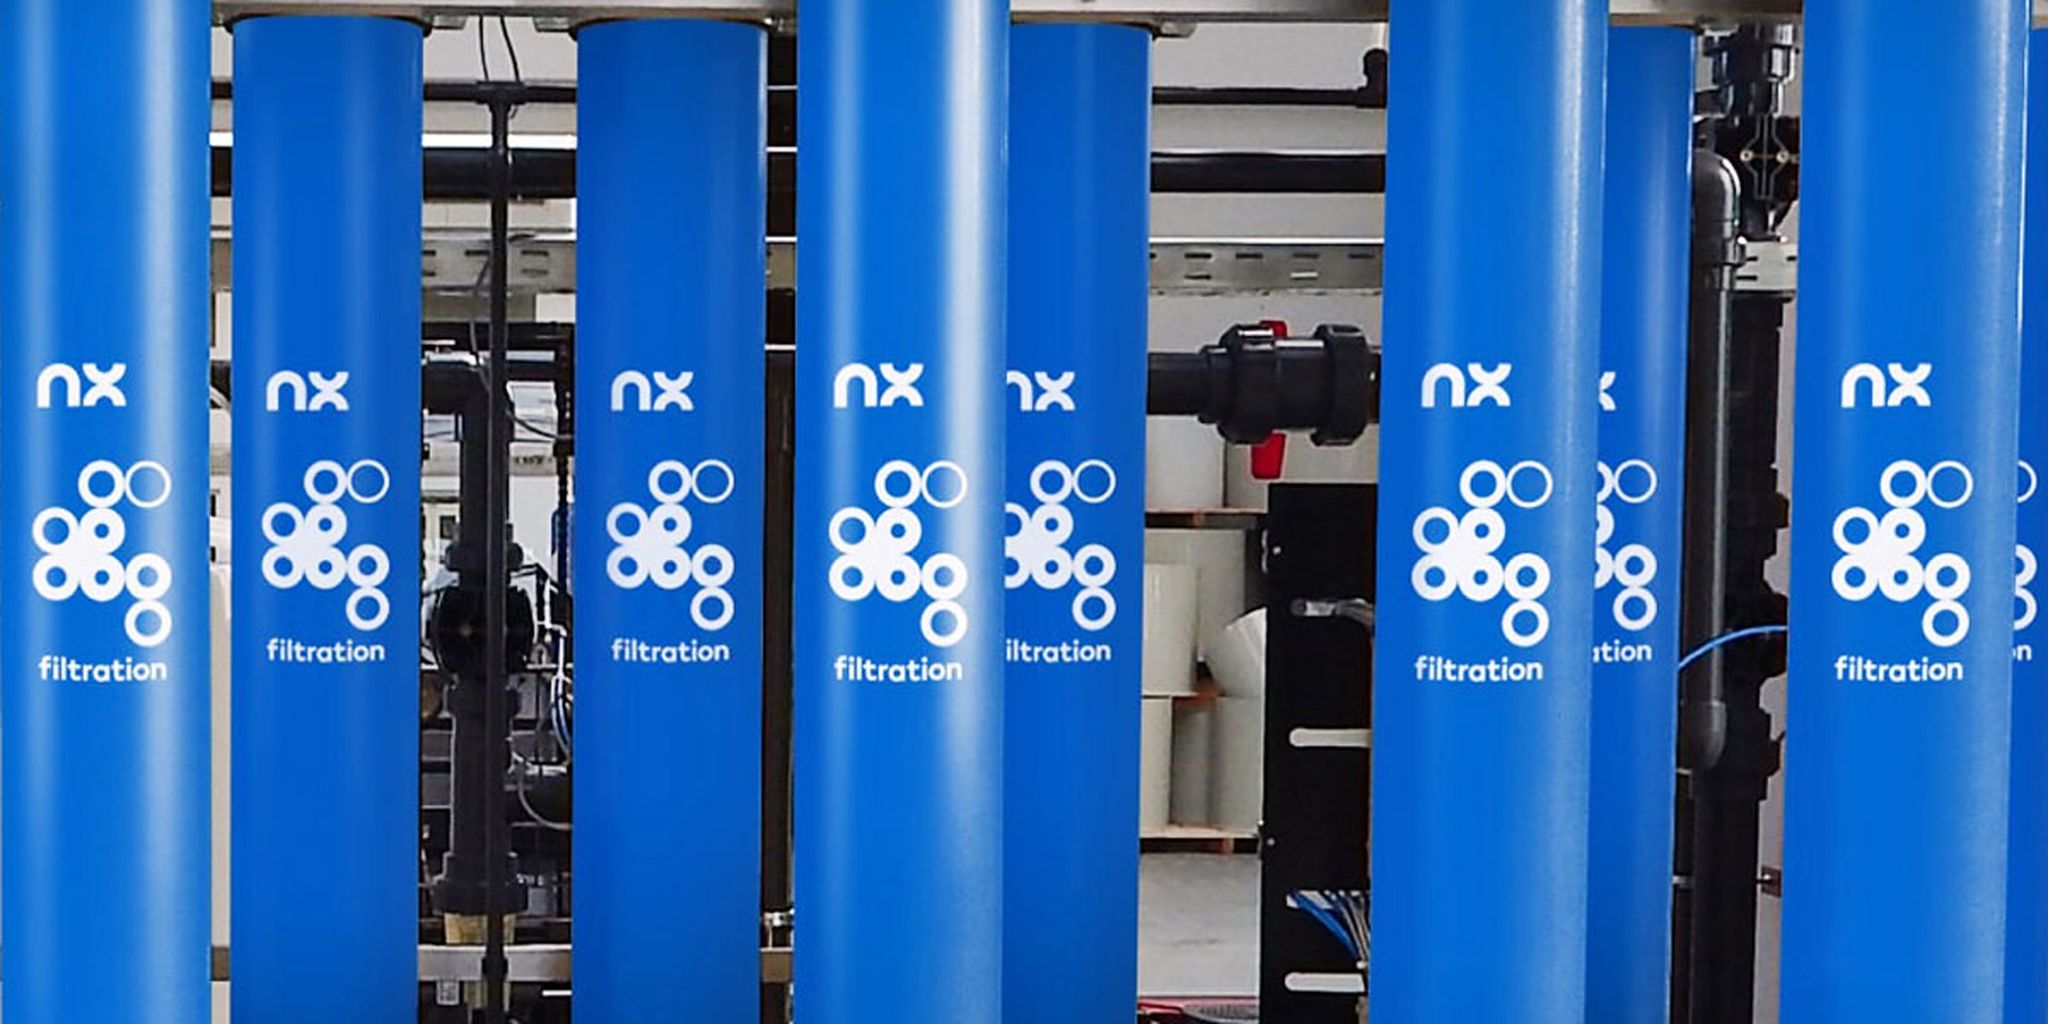 Lang wachten op winst van NX Filtration